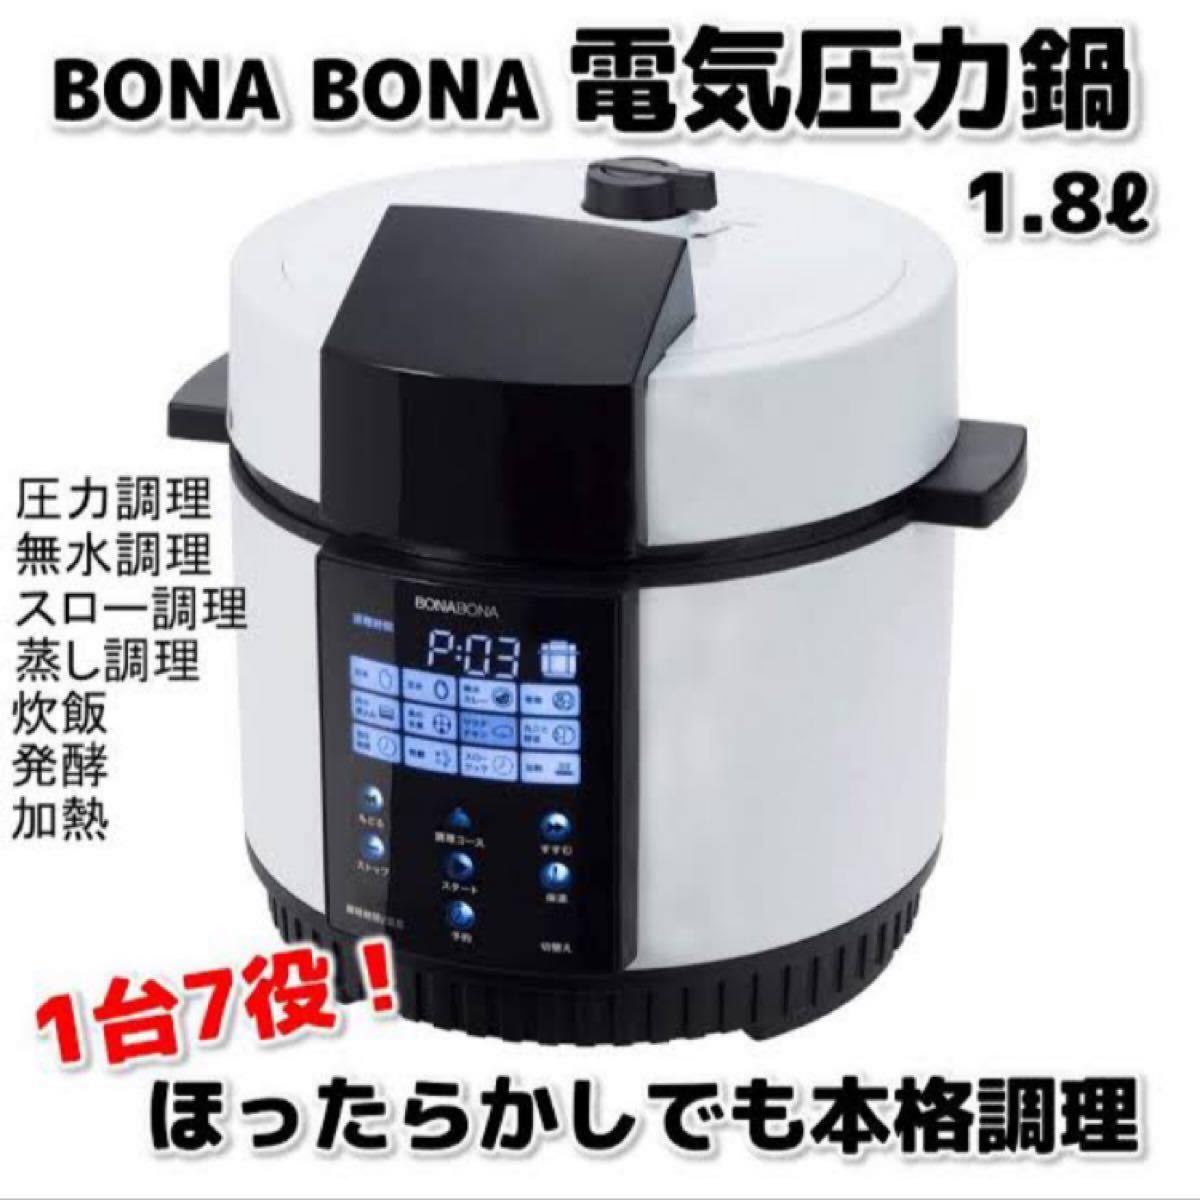 BONA BONA 電機圧力鍋